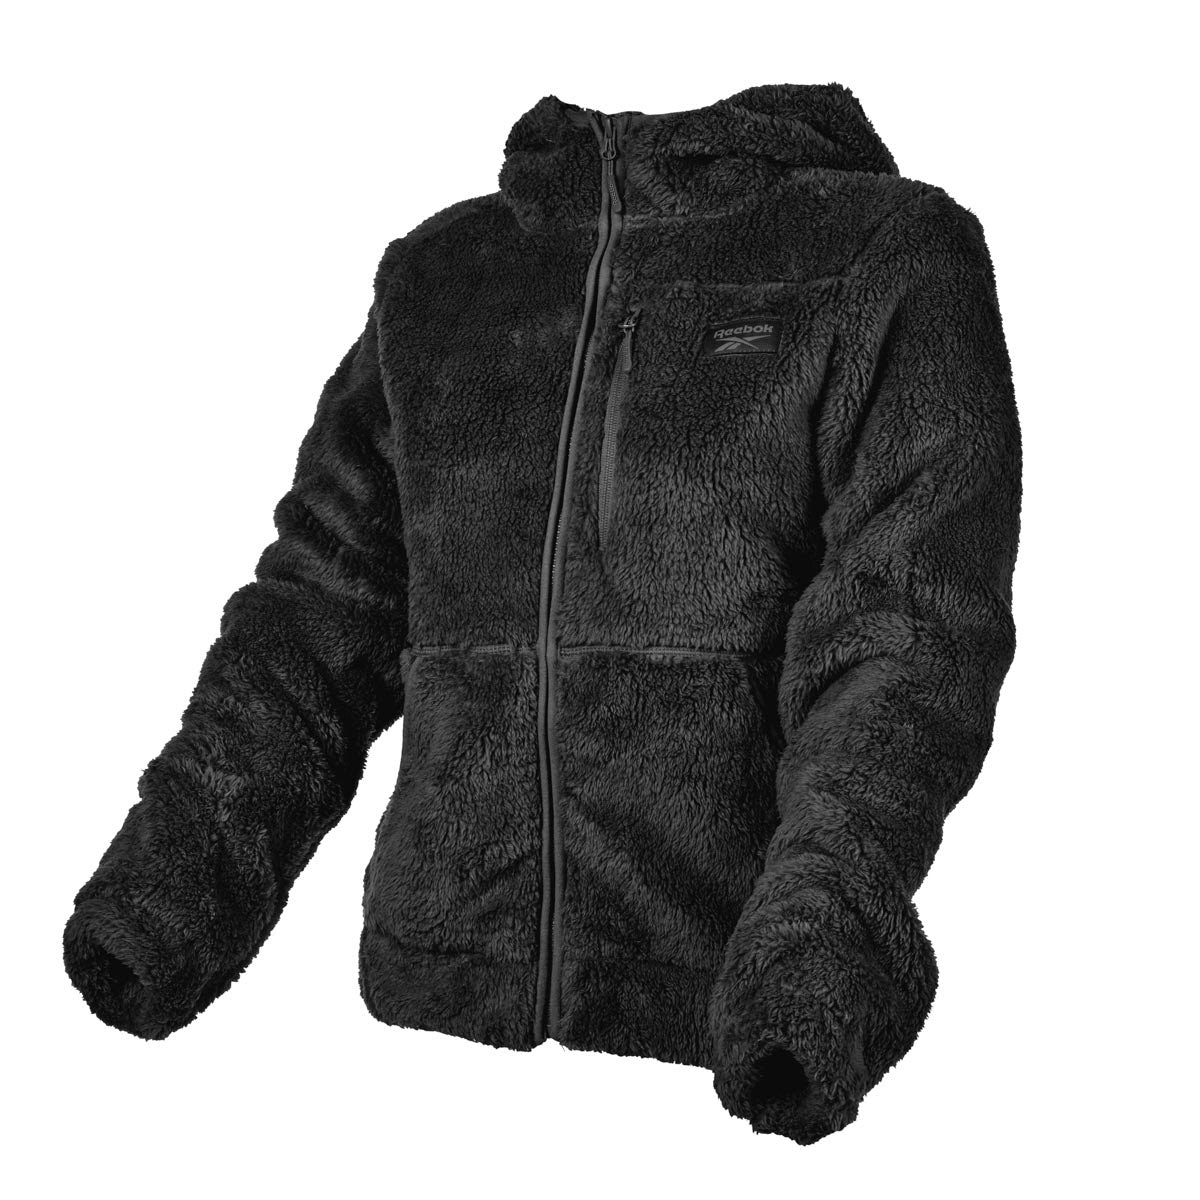 Reebok Women's Heavy Mountain Full Zip Jacket for $24.99 +FS!